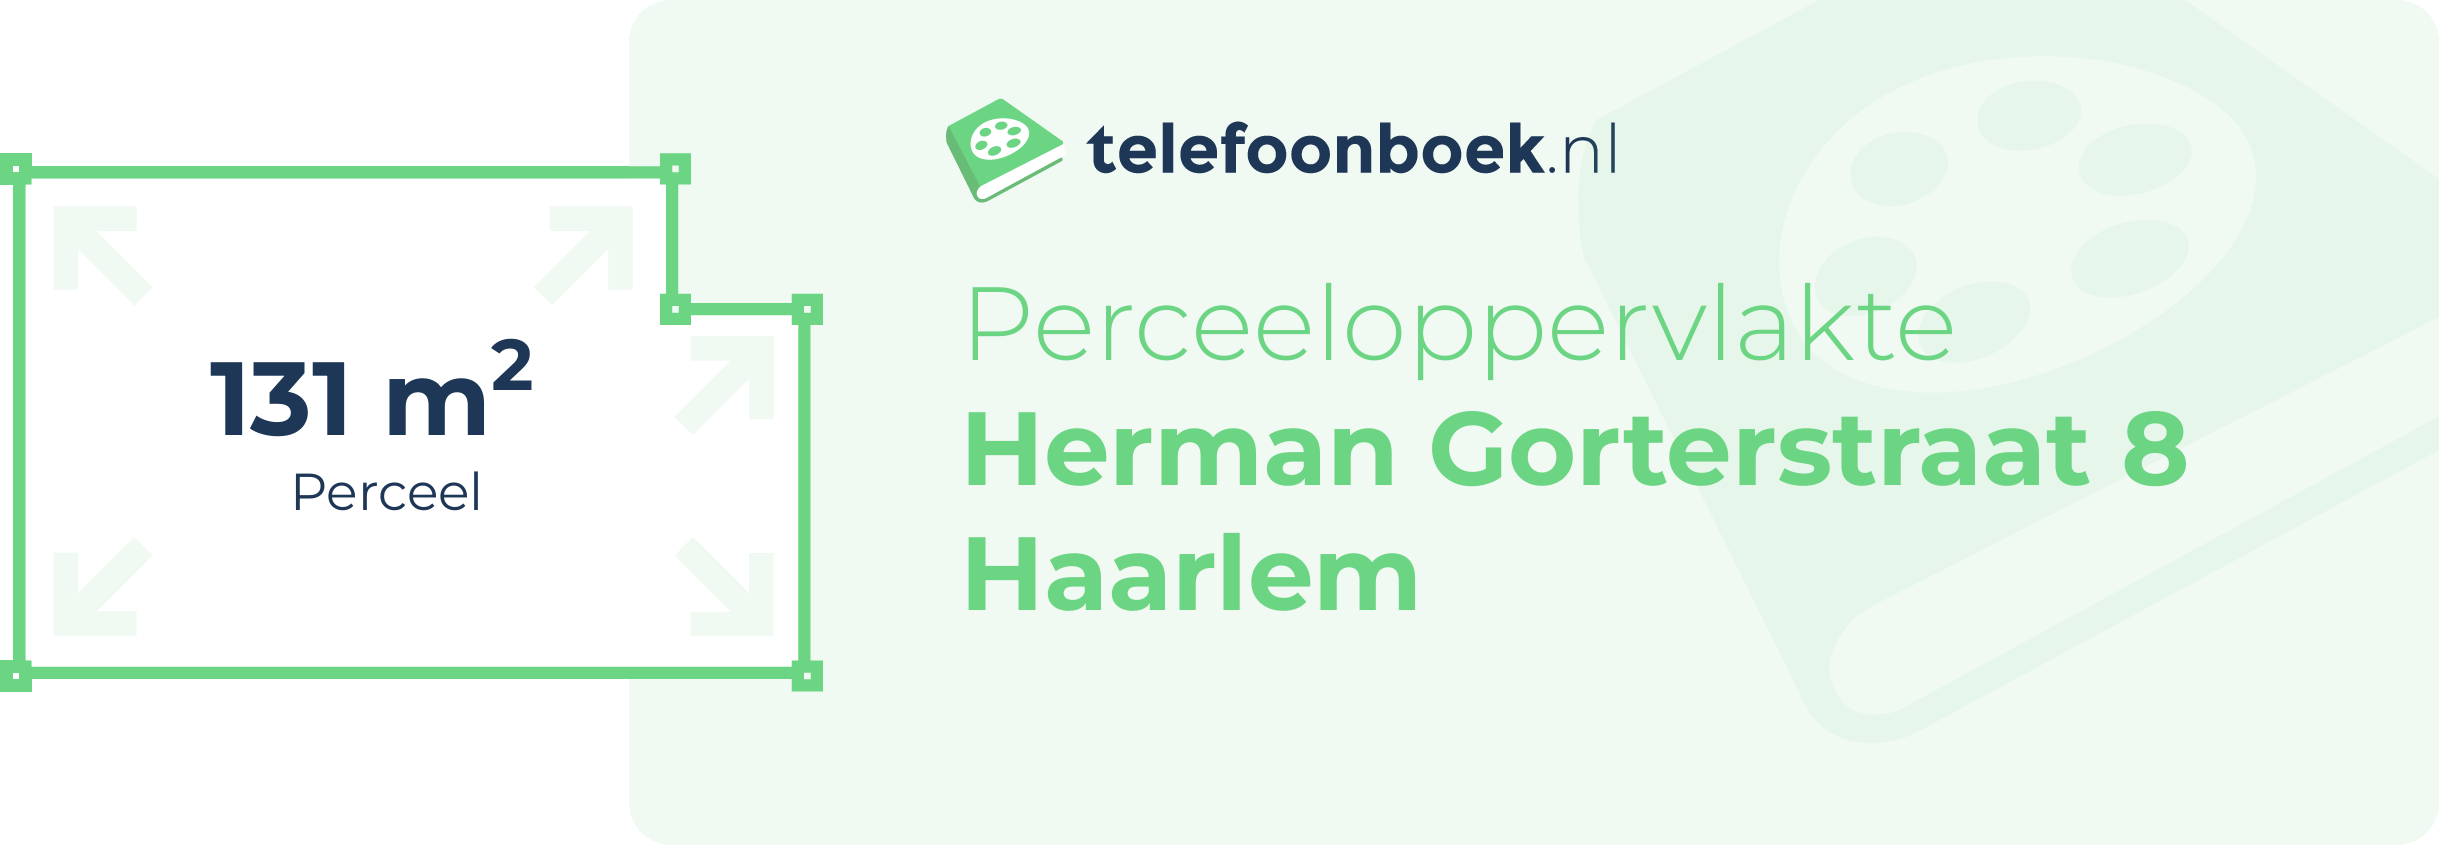 Perceeloppervlakte Herman Gorterstraat 8 Haarlem